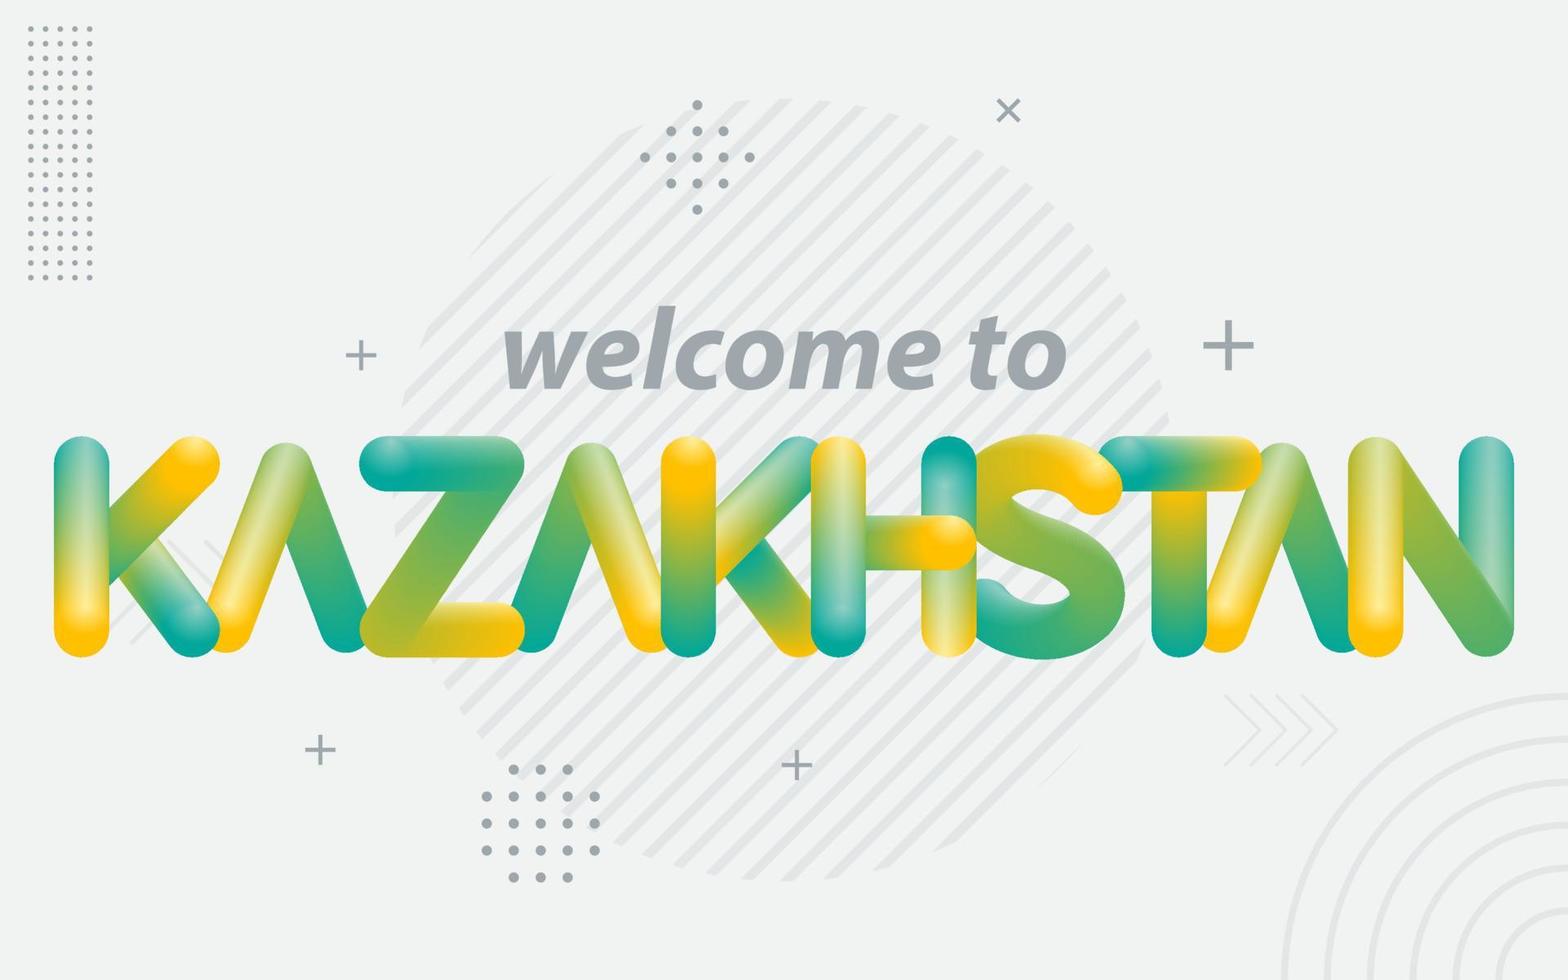 bienvenue au kazakhstan. typographie créative avec effet de mélange 3d vecteur